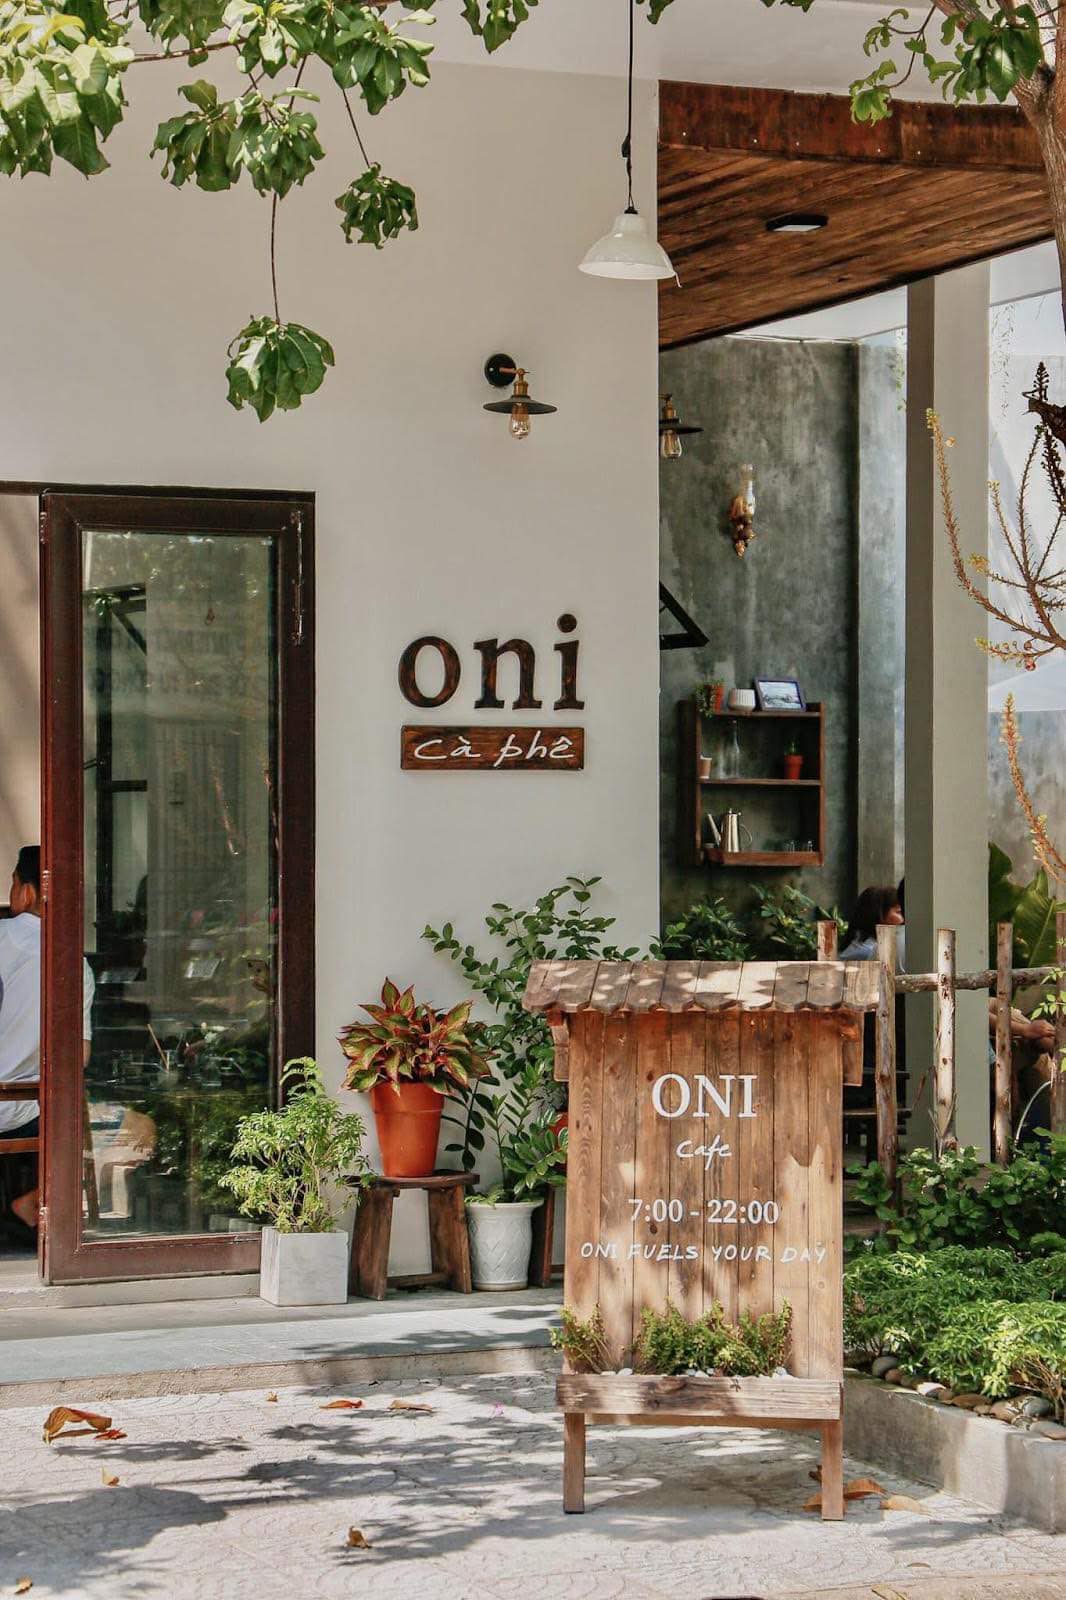 Oni Cafe mang vẻ bình yên, mộc mạc.